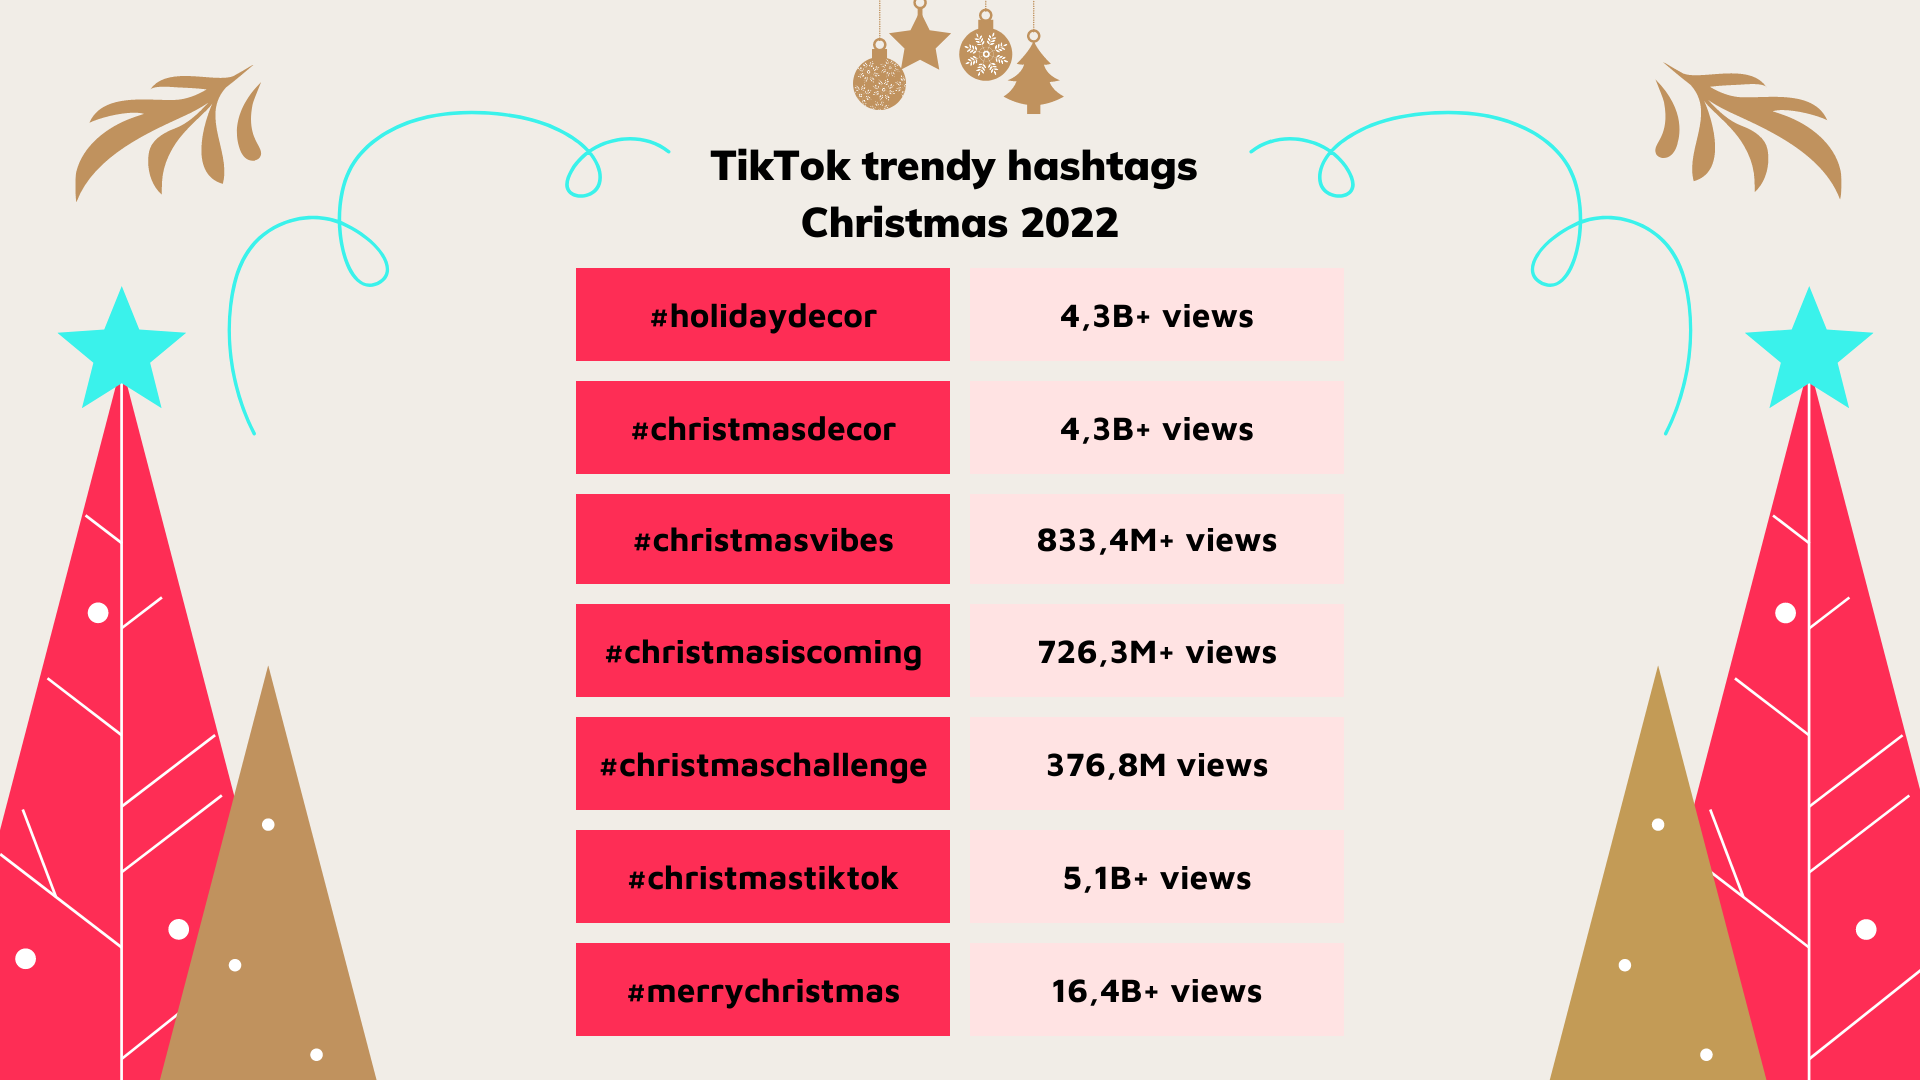 TikTok trendy hashtags about Christmas 2022